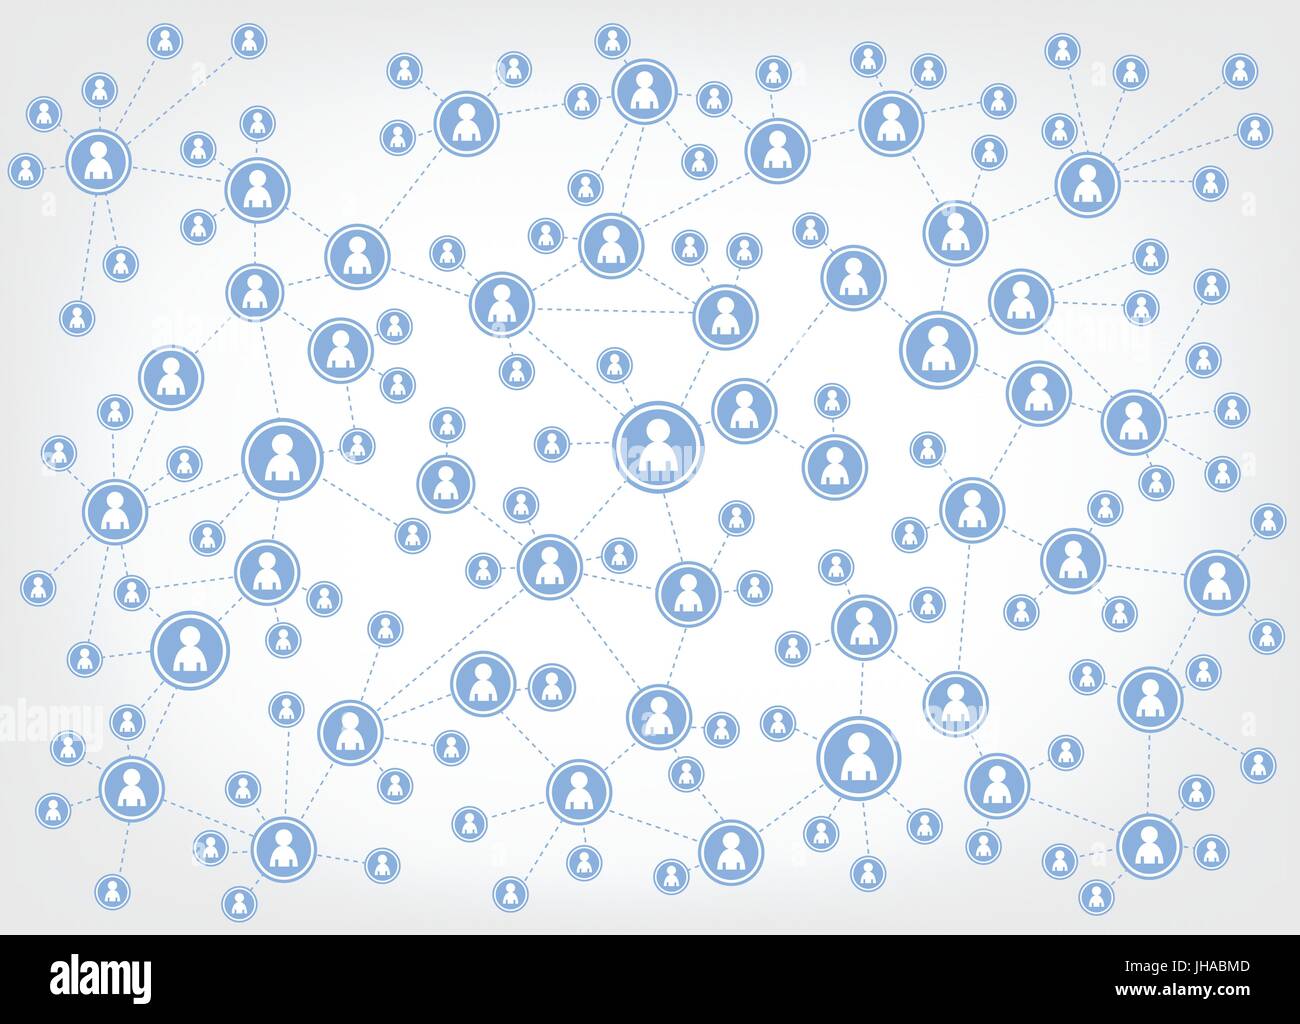 Social Media-Symbole / Illustration - Netzwerk Stockfoto